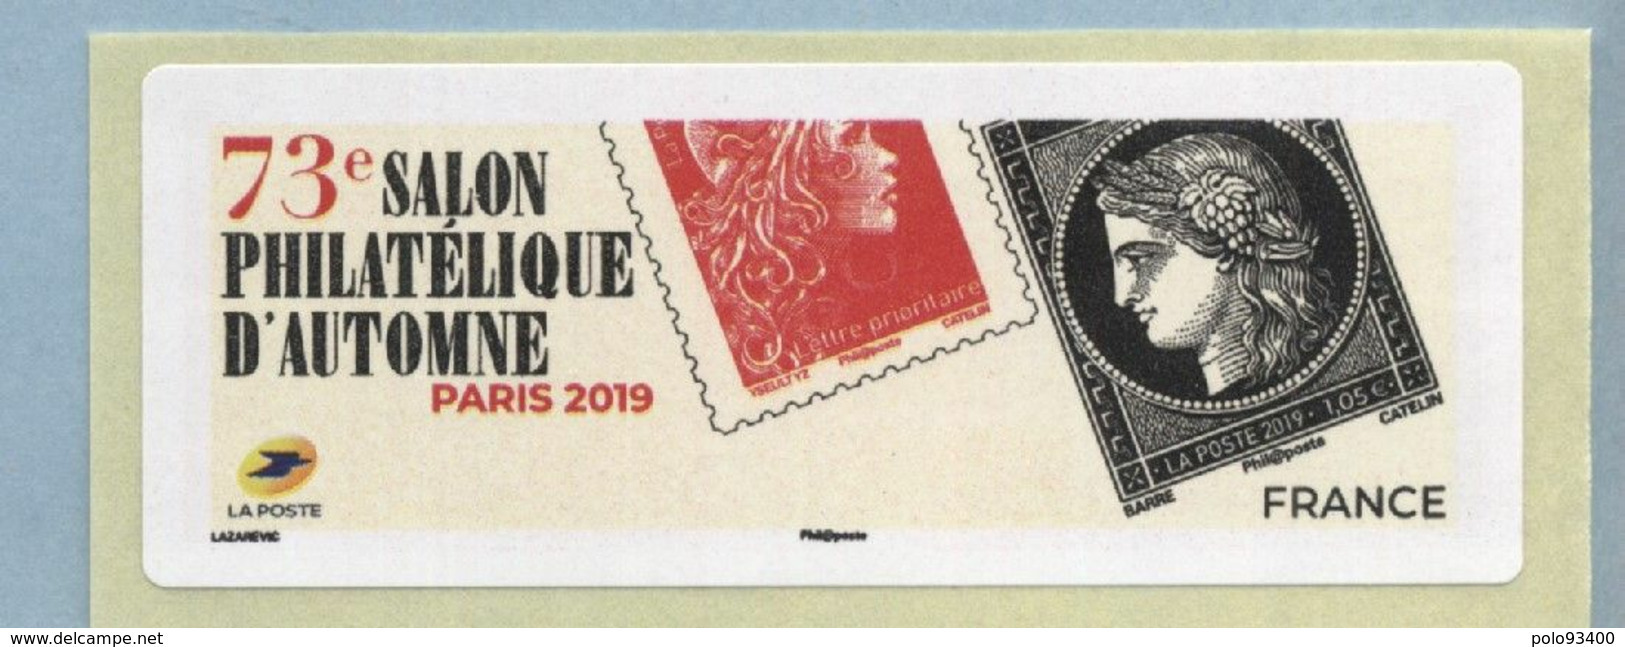 2019 LISA 2 VIERGE 73ème Salon Philatélique D'automne à Paris - 2010-... Illustrated Franking Labels